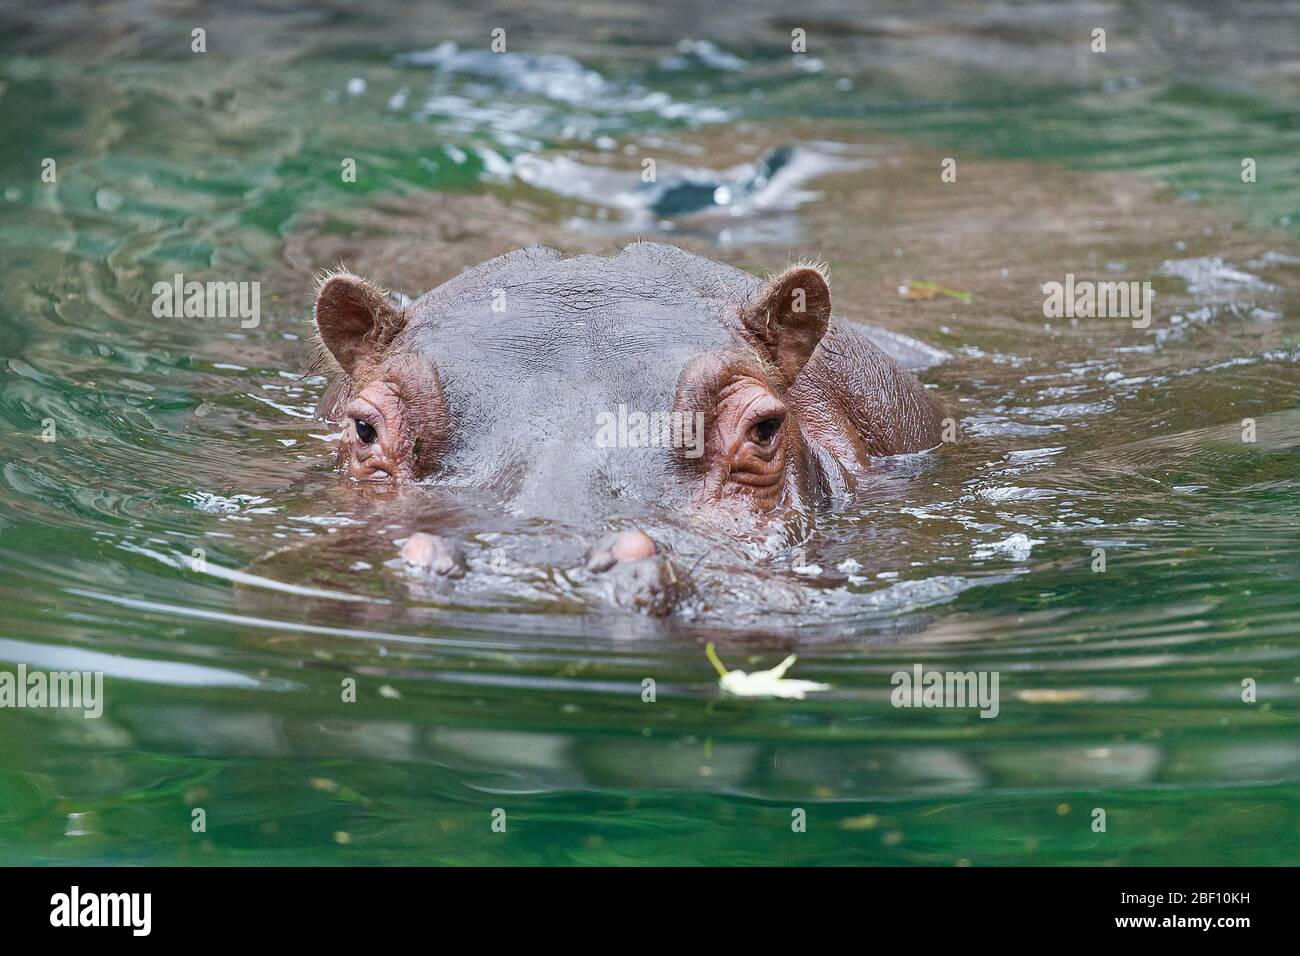 Ein Nilpferd - Nilpferd amphibisch - Nilpferd im Wasser liegend Stockfoto